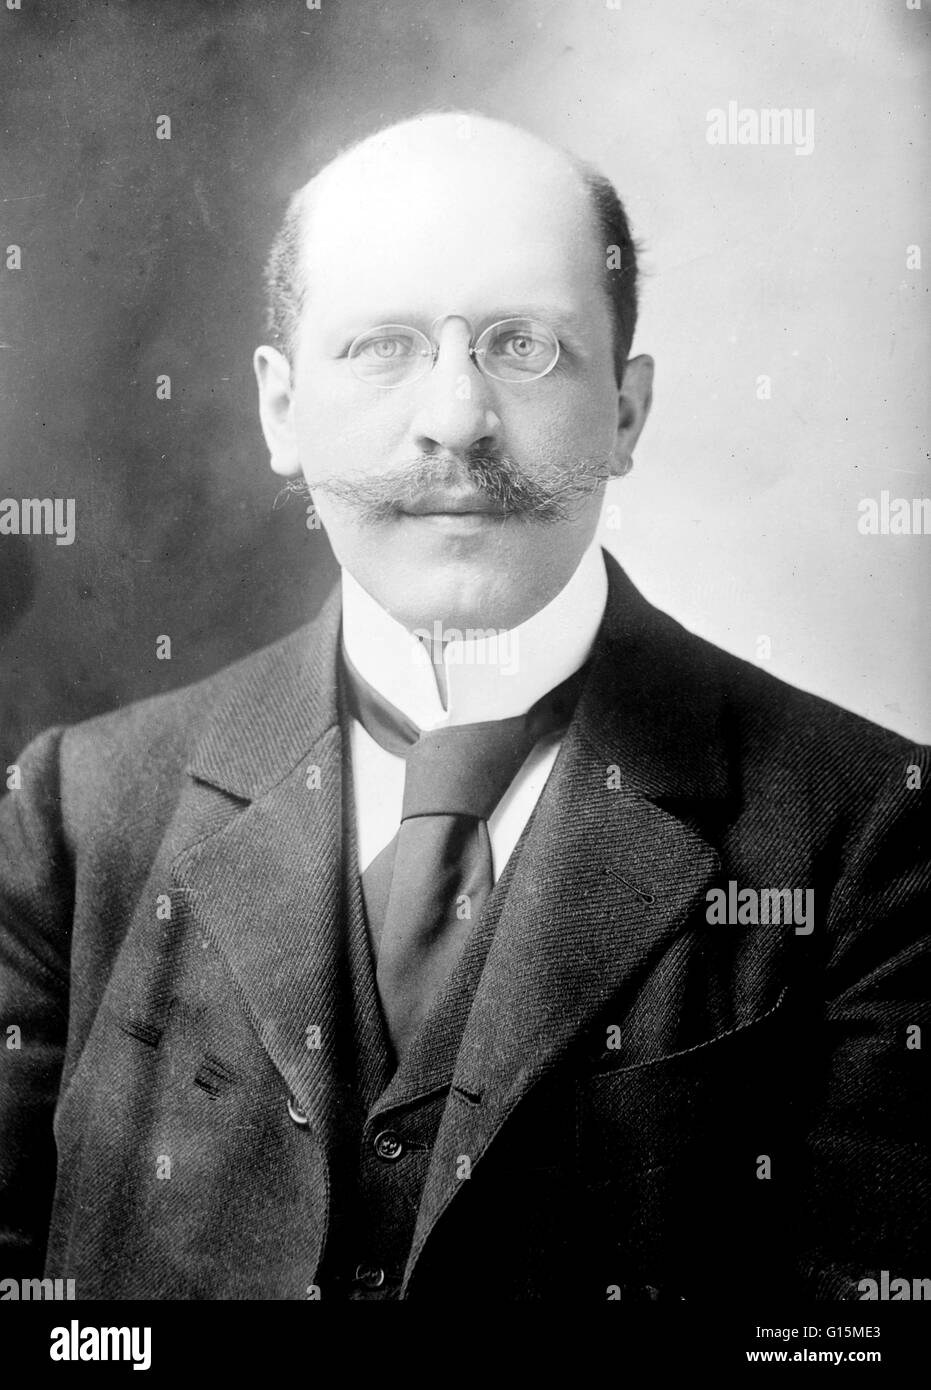 Hugo Münsterberg (1. Juni 1863 - 19. Dezember 1916) war ein deutsch-US-amerikanischer Psychologe. Er war einer der Pioniere in der angewandten Psychologie, erweitert seine Forschung und Theorien zum Industrial/organisatorische (i/o), juristische, medizinische, klinische, pädagogische und bus Stockfoto